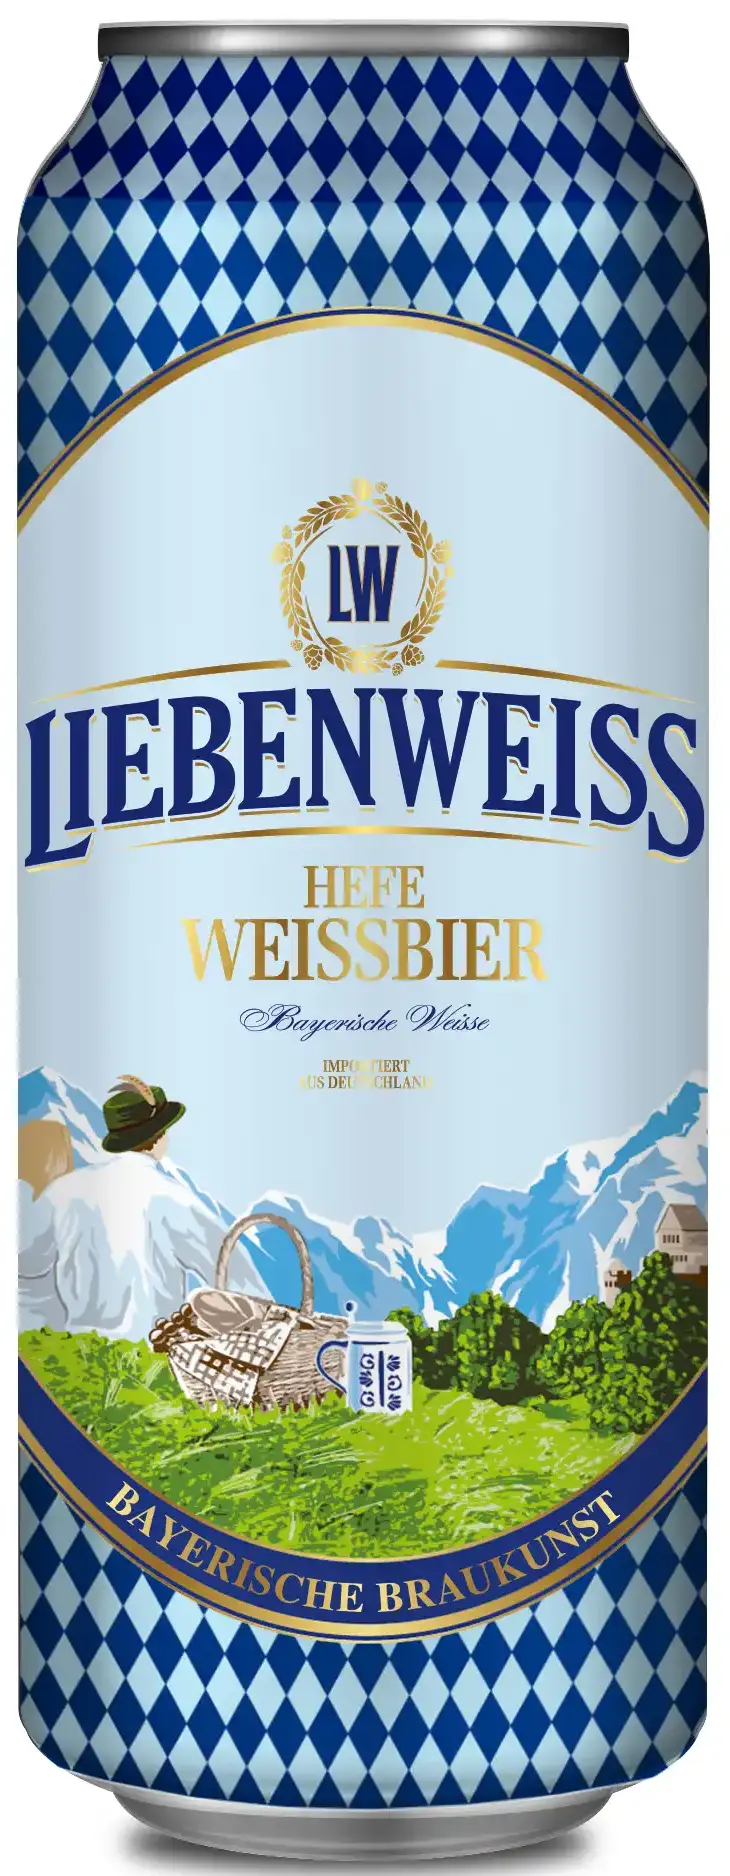 Liebenweiss Hefe-Weissbier (Либенвайс Хефе Вайсбир)